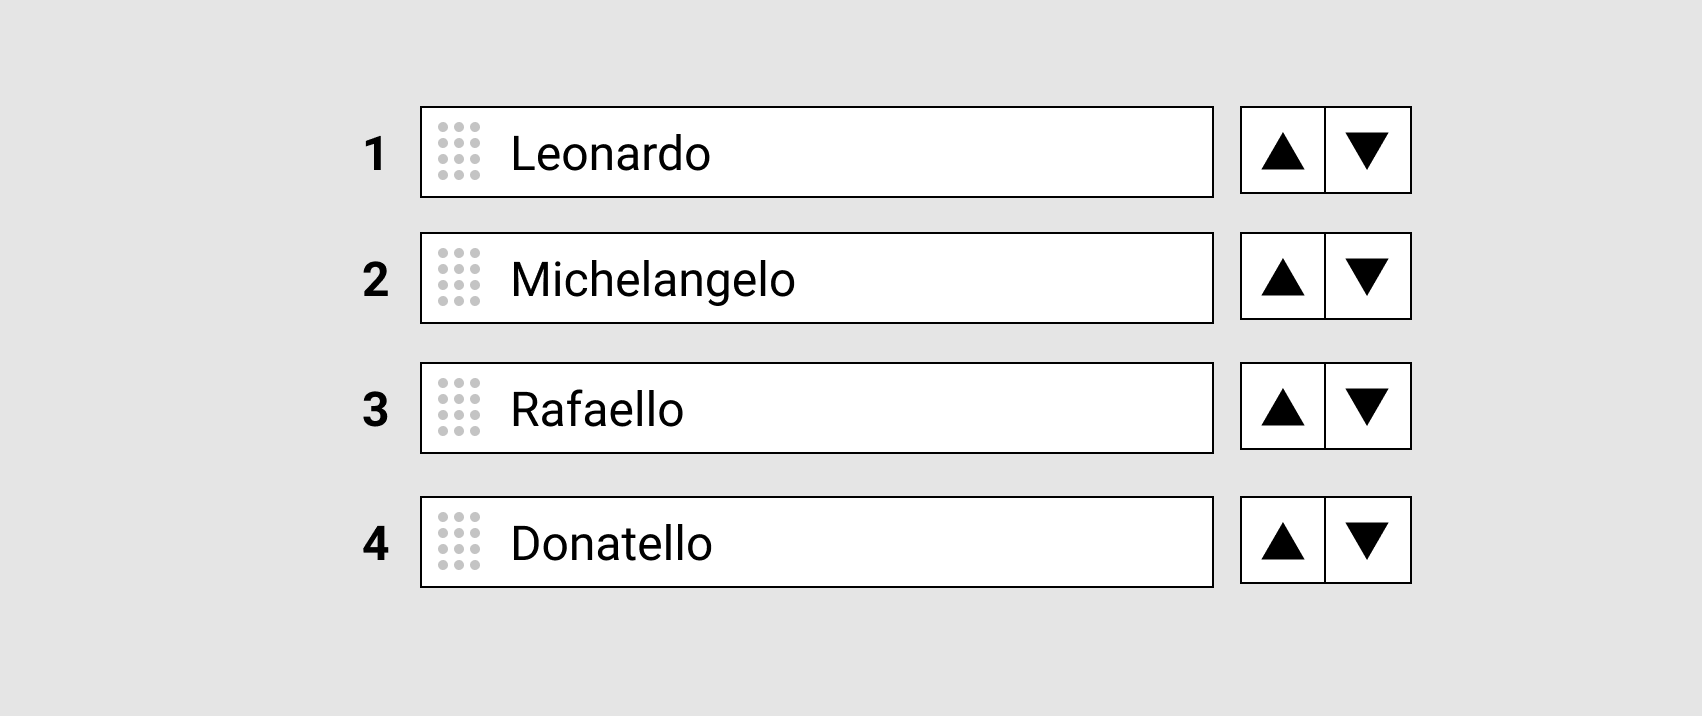 Lijst die te herordenen is met als opties de namen Leonardo, Michelangelo, Rafaello en Donatello. Bekende Italiaanse kunstenaars maar ook Teenage Mutant Hero Turtles.